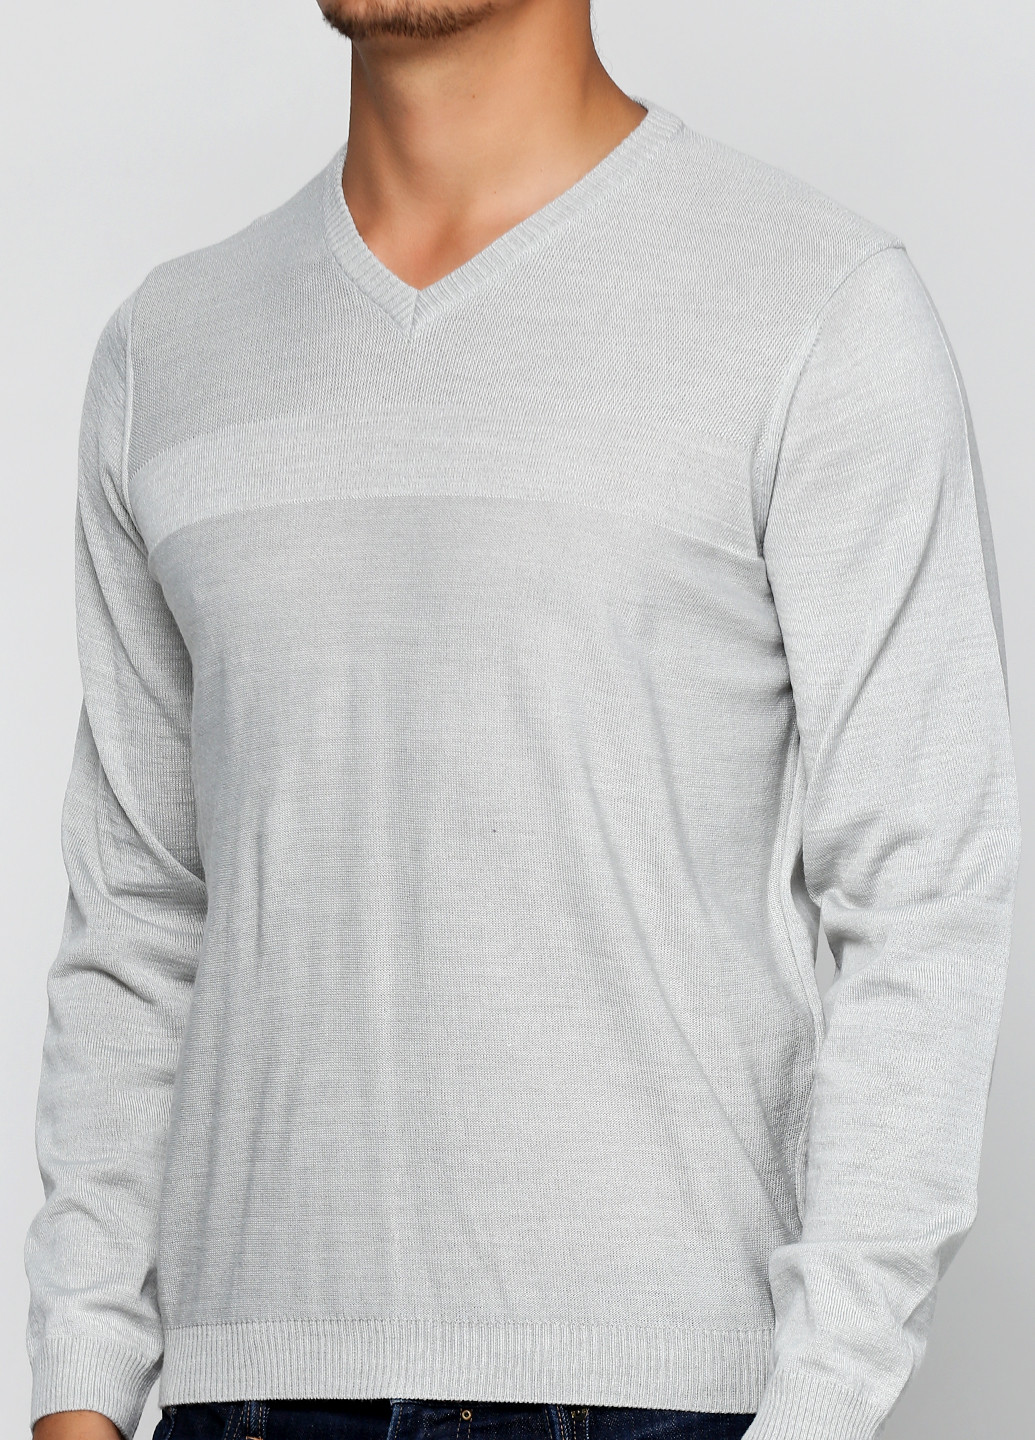 Светло-серый демисезонный пуловер пуловер Belika